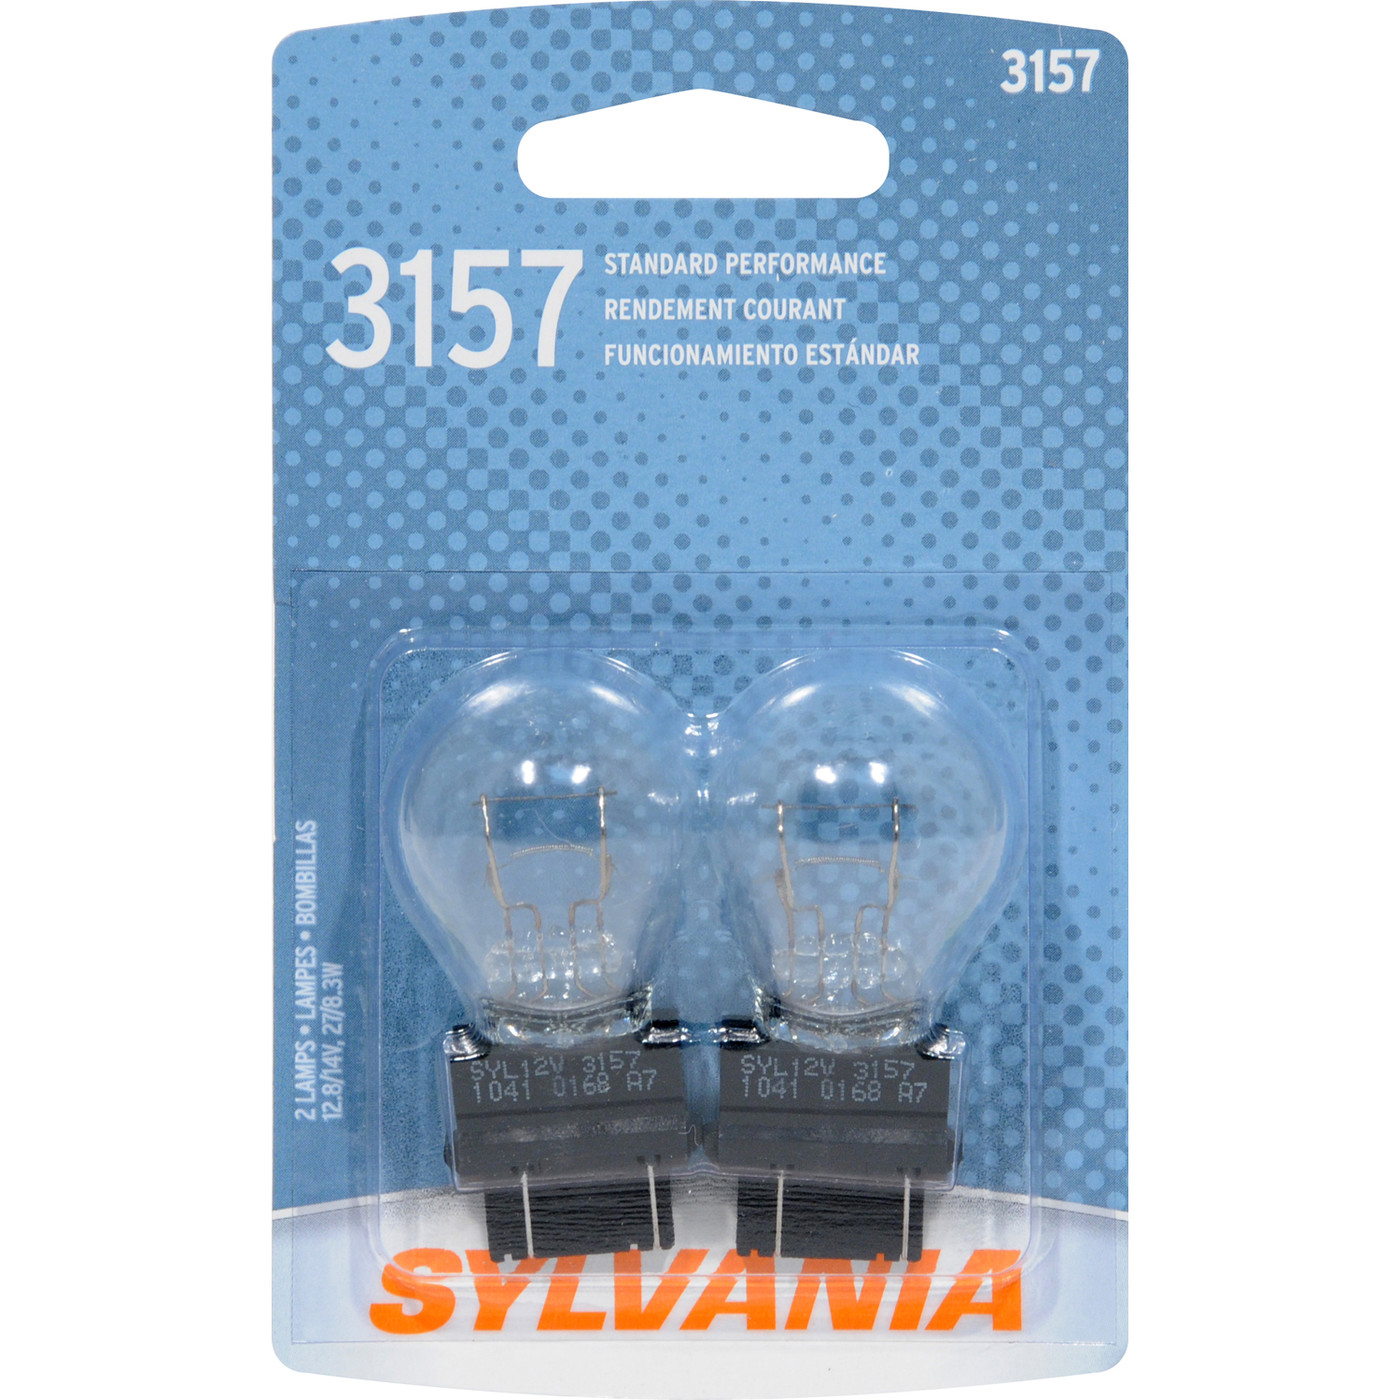 SYLVANIA RETAIL PACKS - Blister Pack Twin Back Up Light Bulb - SYR 3157.BP2